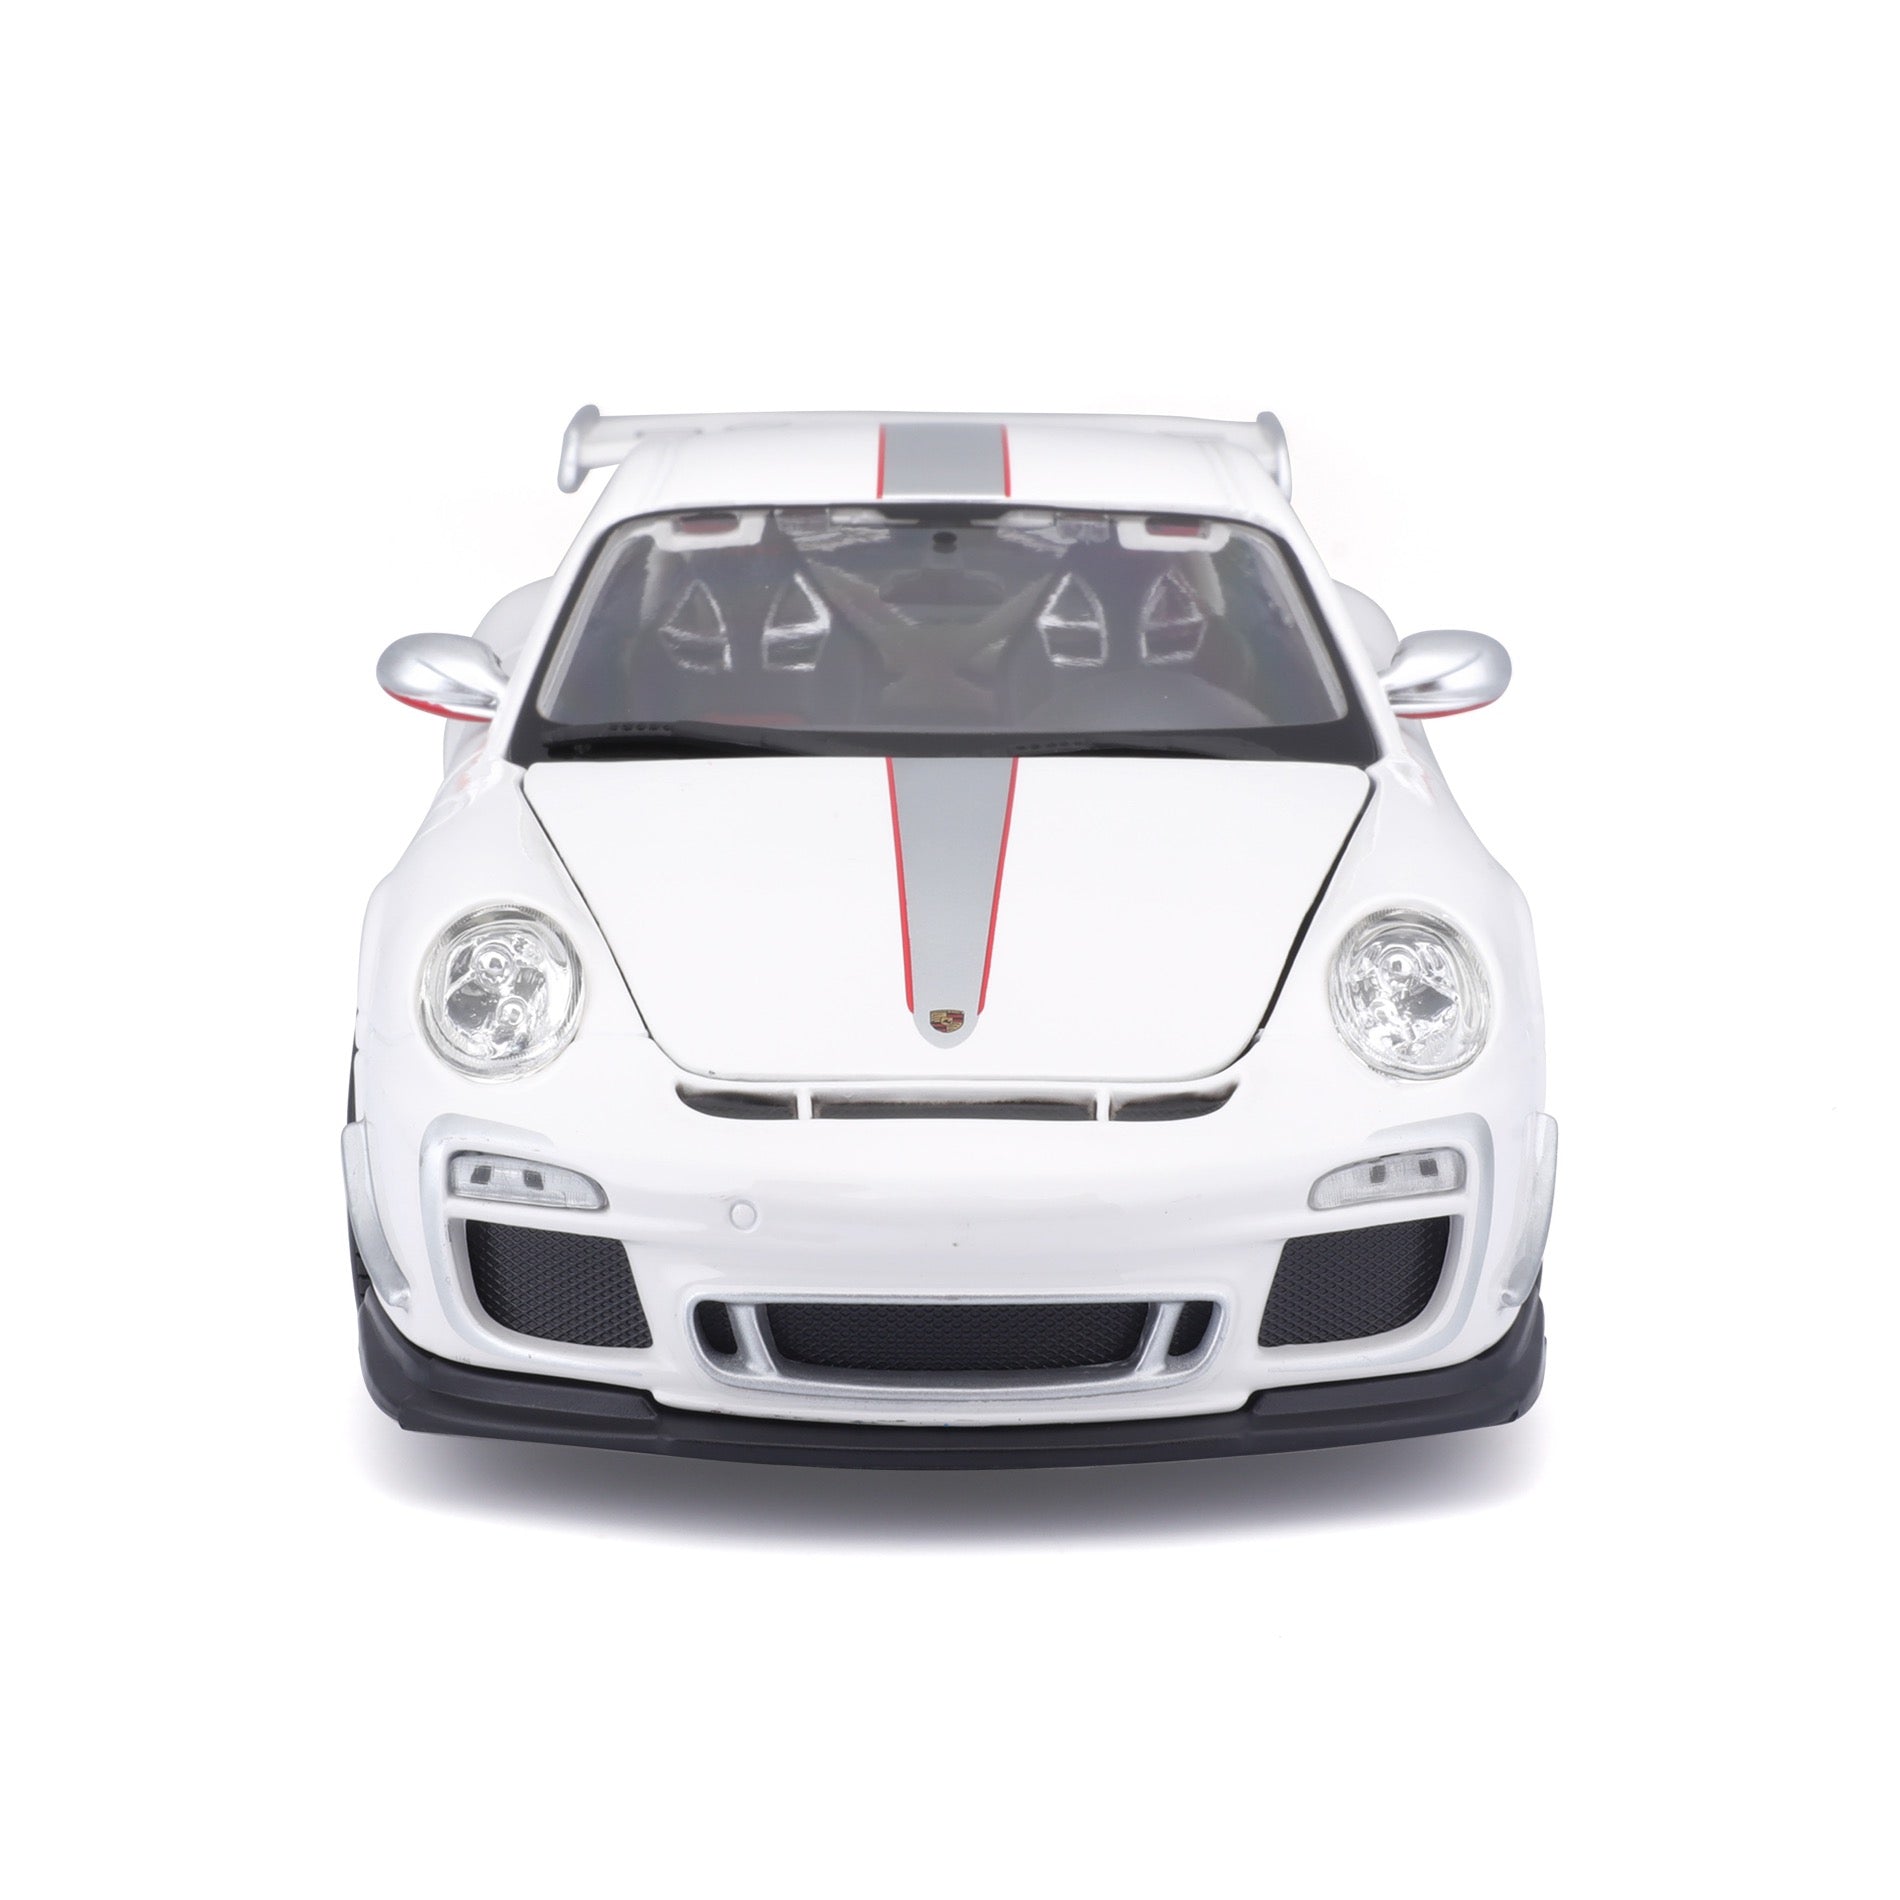 18-11036 WT - Bburago - 1:18 - Porsche GT3 RS 4.0 - White